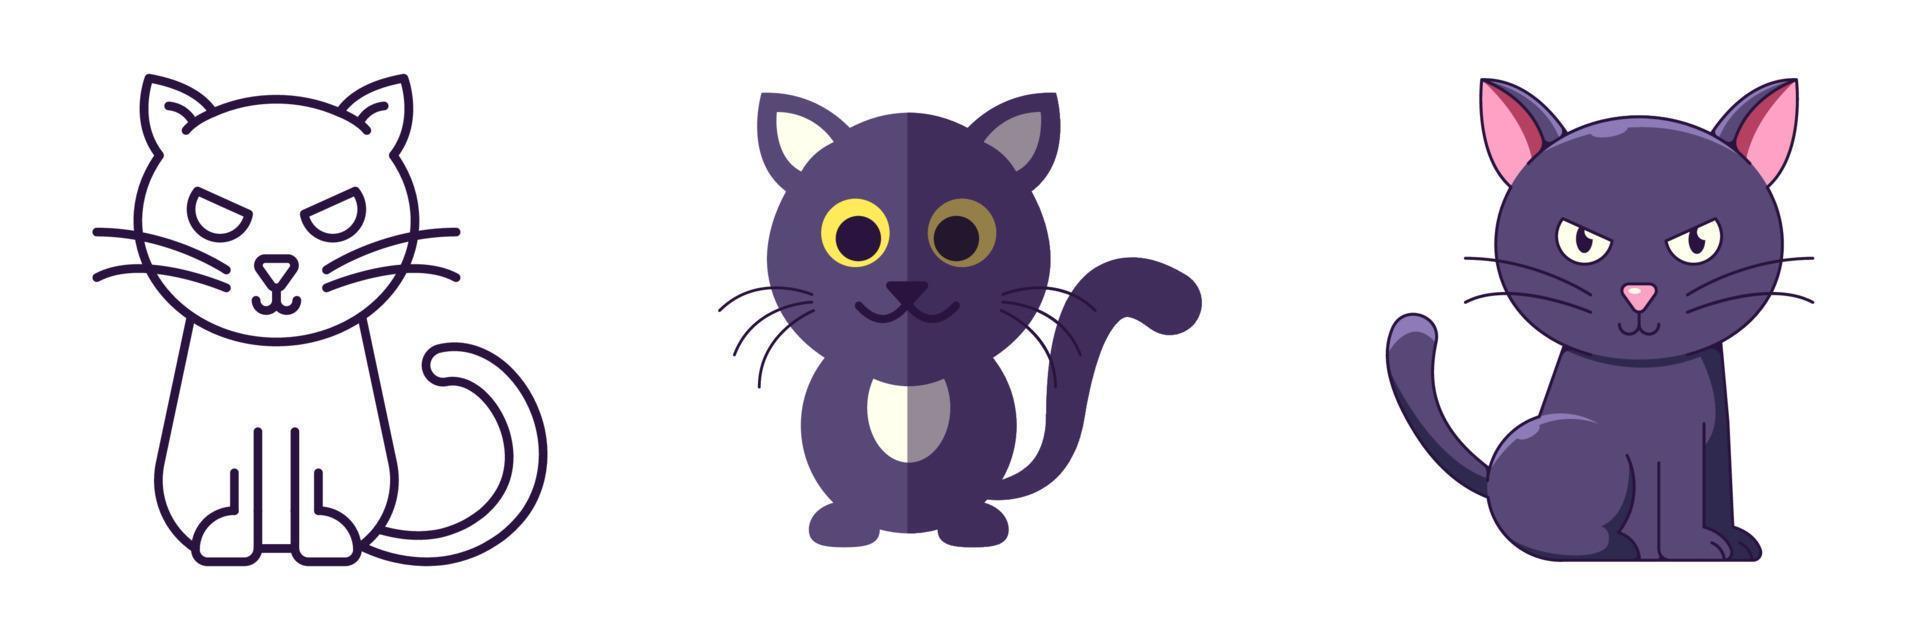 éléments d'halloween. l'ensemble d'icônes vectorielles de chat noir est dessiné dans des styles de ligne, plat et dessin animé. parfait pour les applications, les livres, les articles, les magasins, les magasins, les publicités vecteur